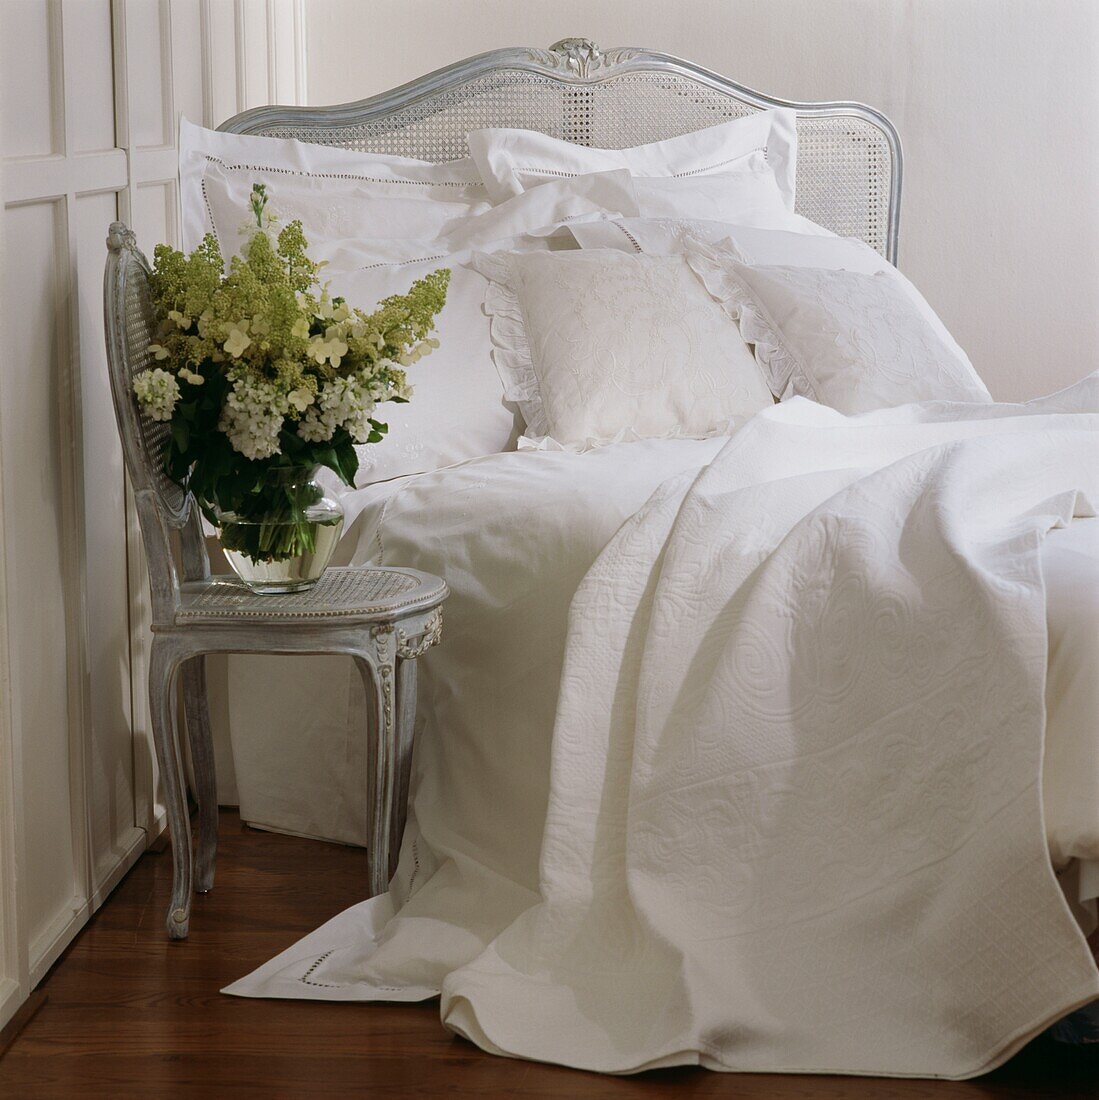 Blumenarrangement auf einem Stuhl neben einem ungemachten Bett